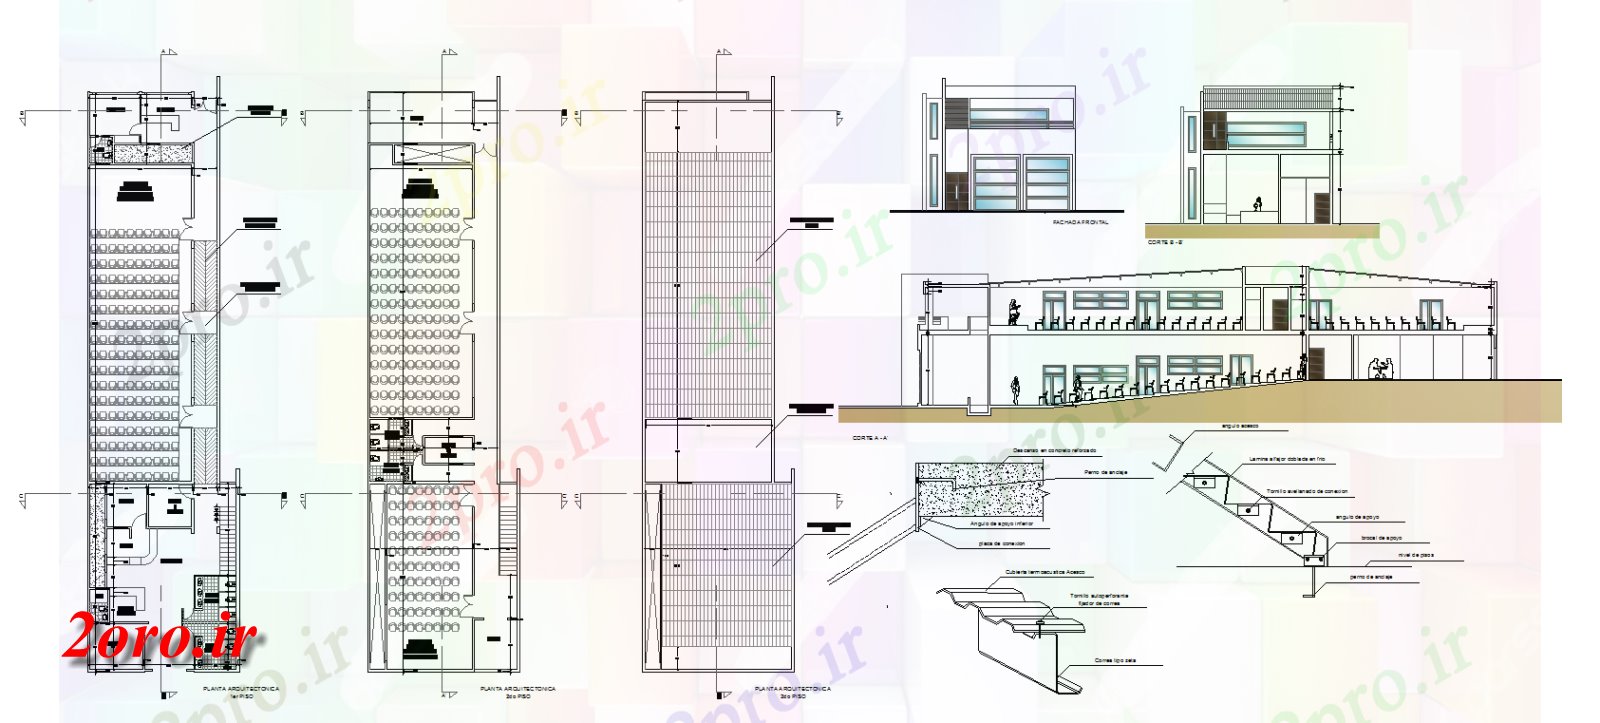 دانلود نقشه تئاتر چند منظوره - سینما - سالن کنفرانس - سالن همایشگیاهان architectecture از سالن طراحی 10 در 38 متر (کد57594)